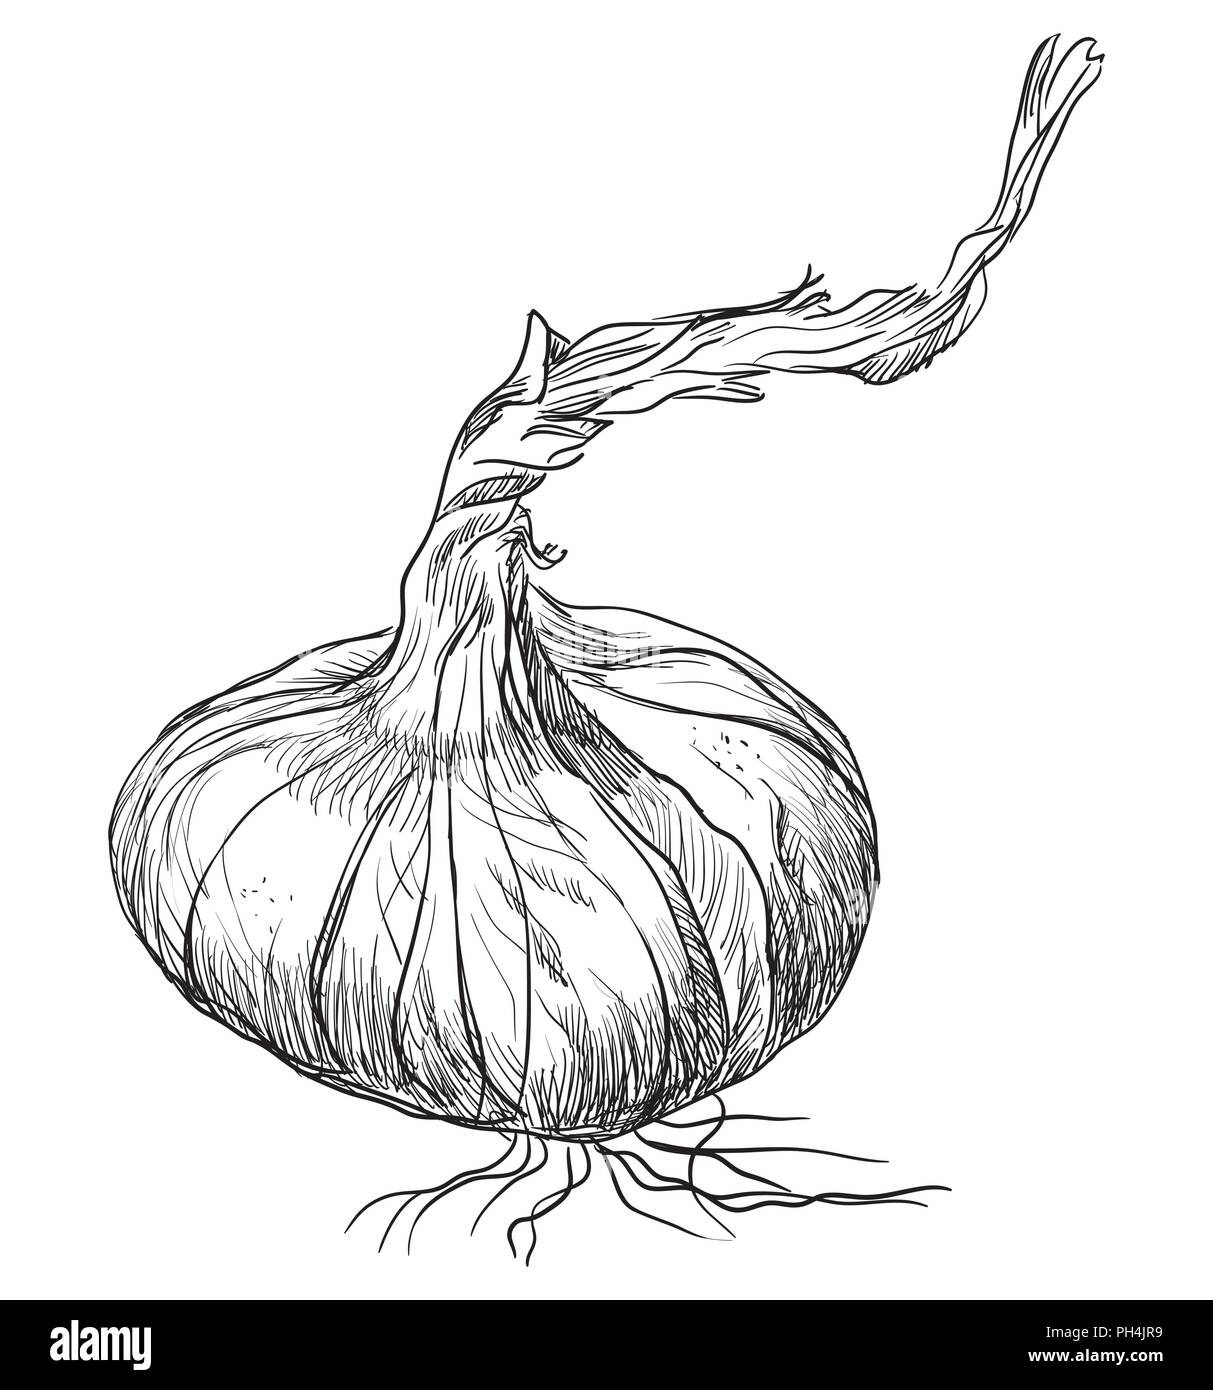 Disegnato a mano-vegetali cipolla. Vettore illustrazione monocromatica isolati su sfondo bianco. Illustrazione Vettoriale